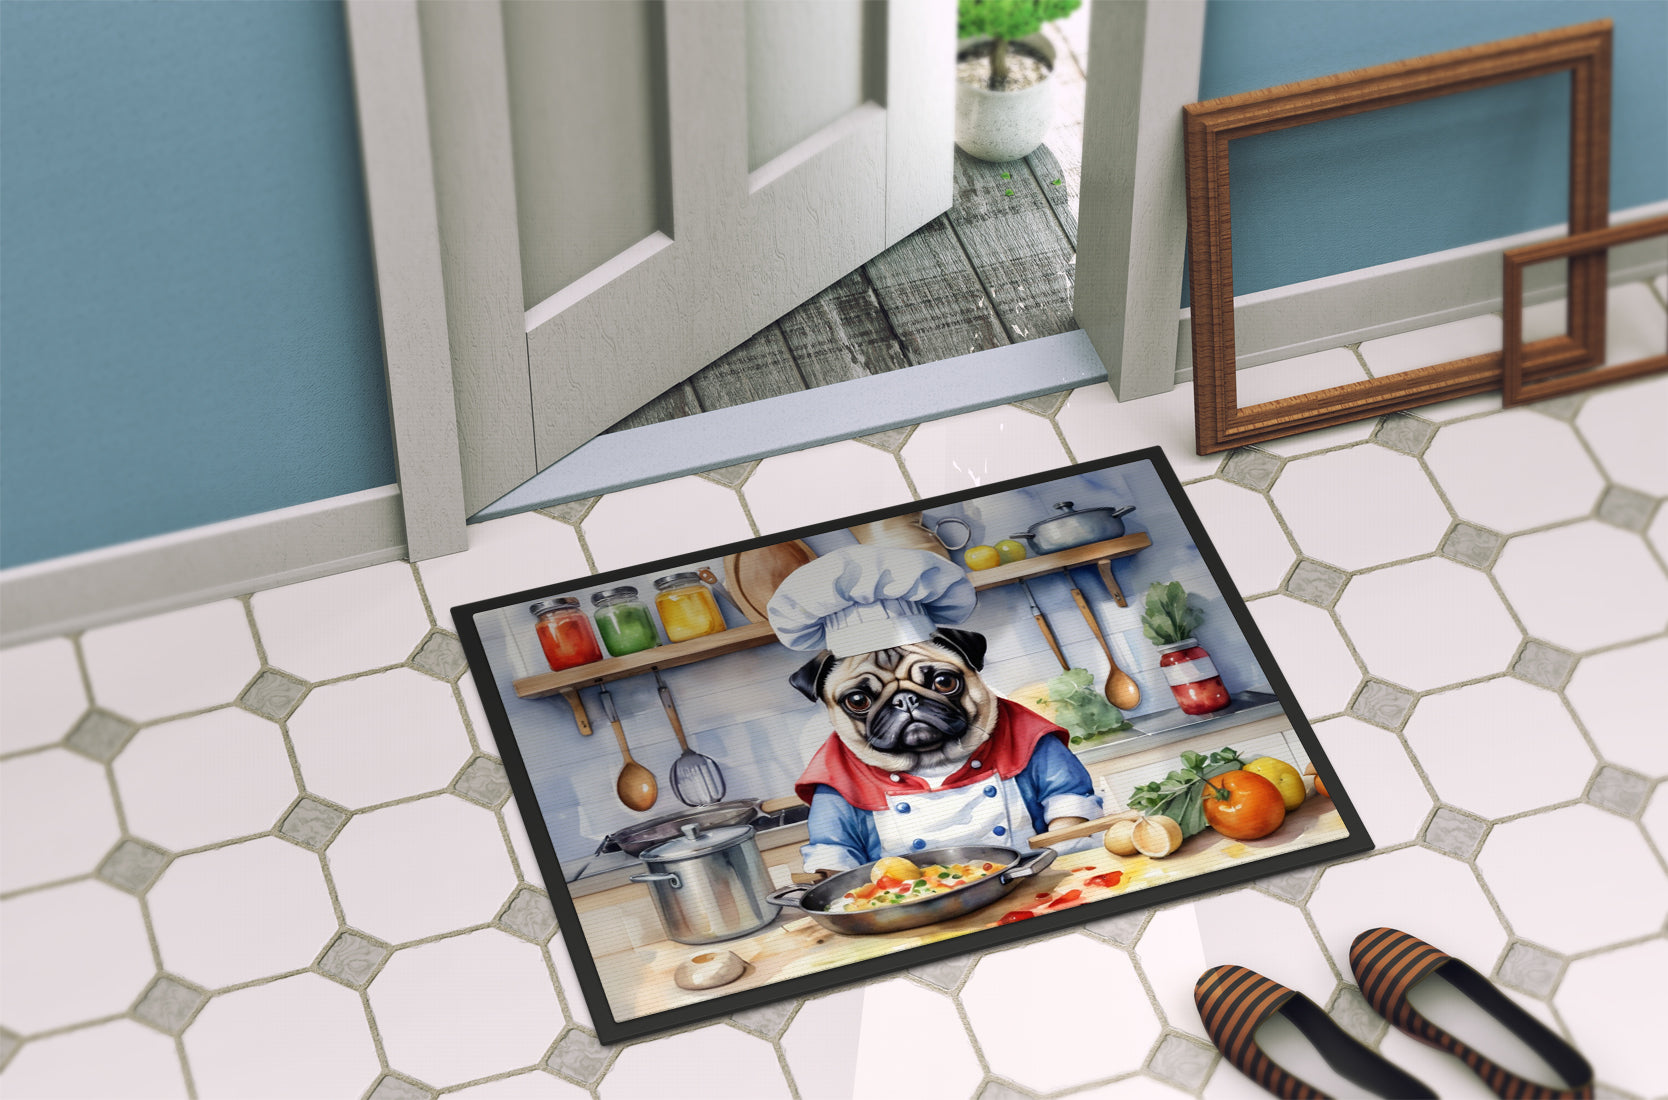 Pug The Chef Doormat